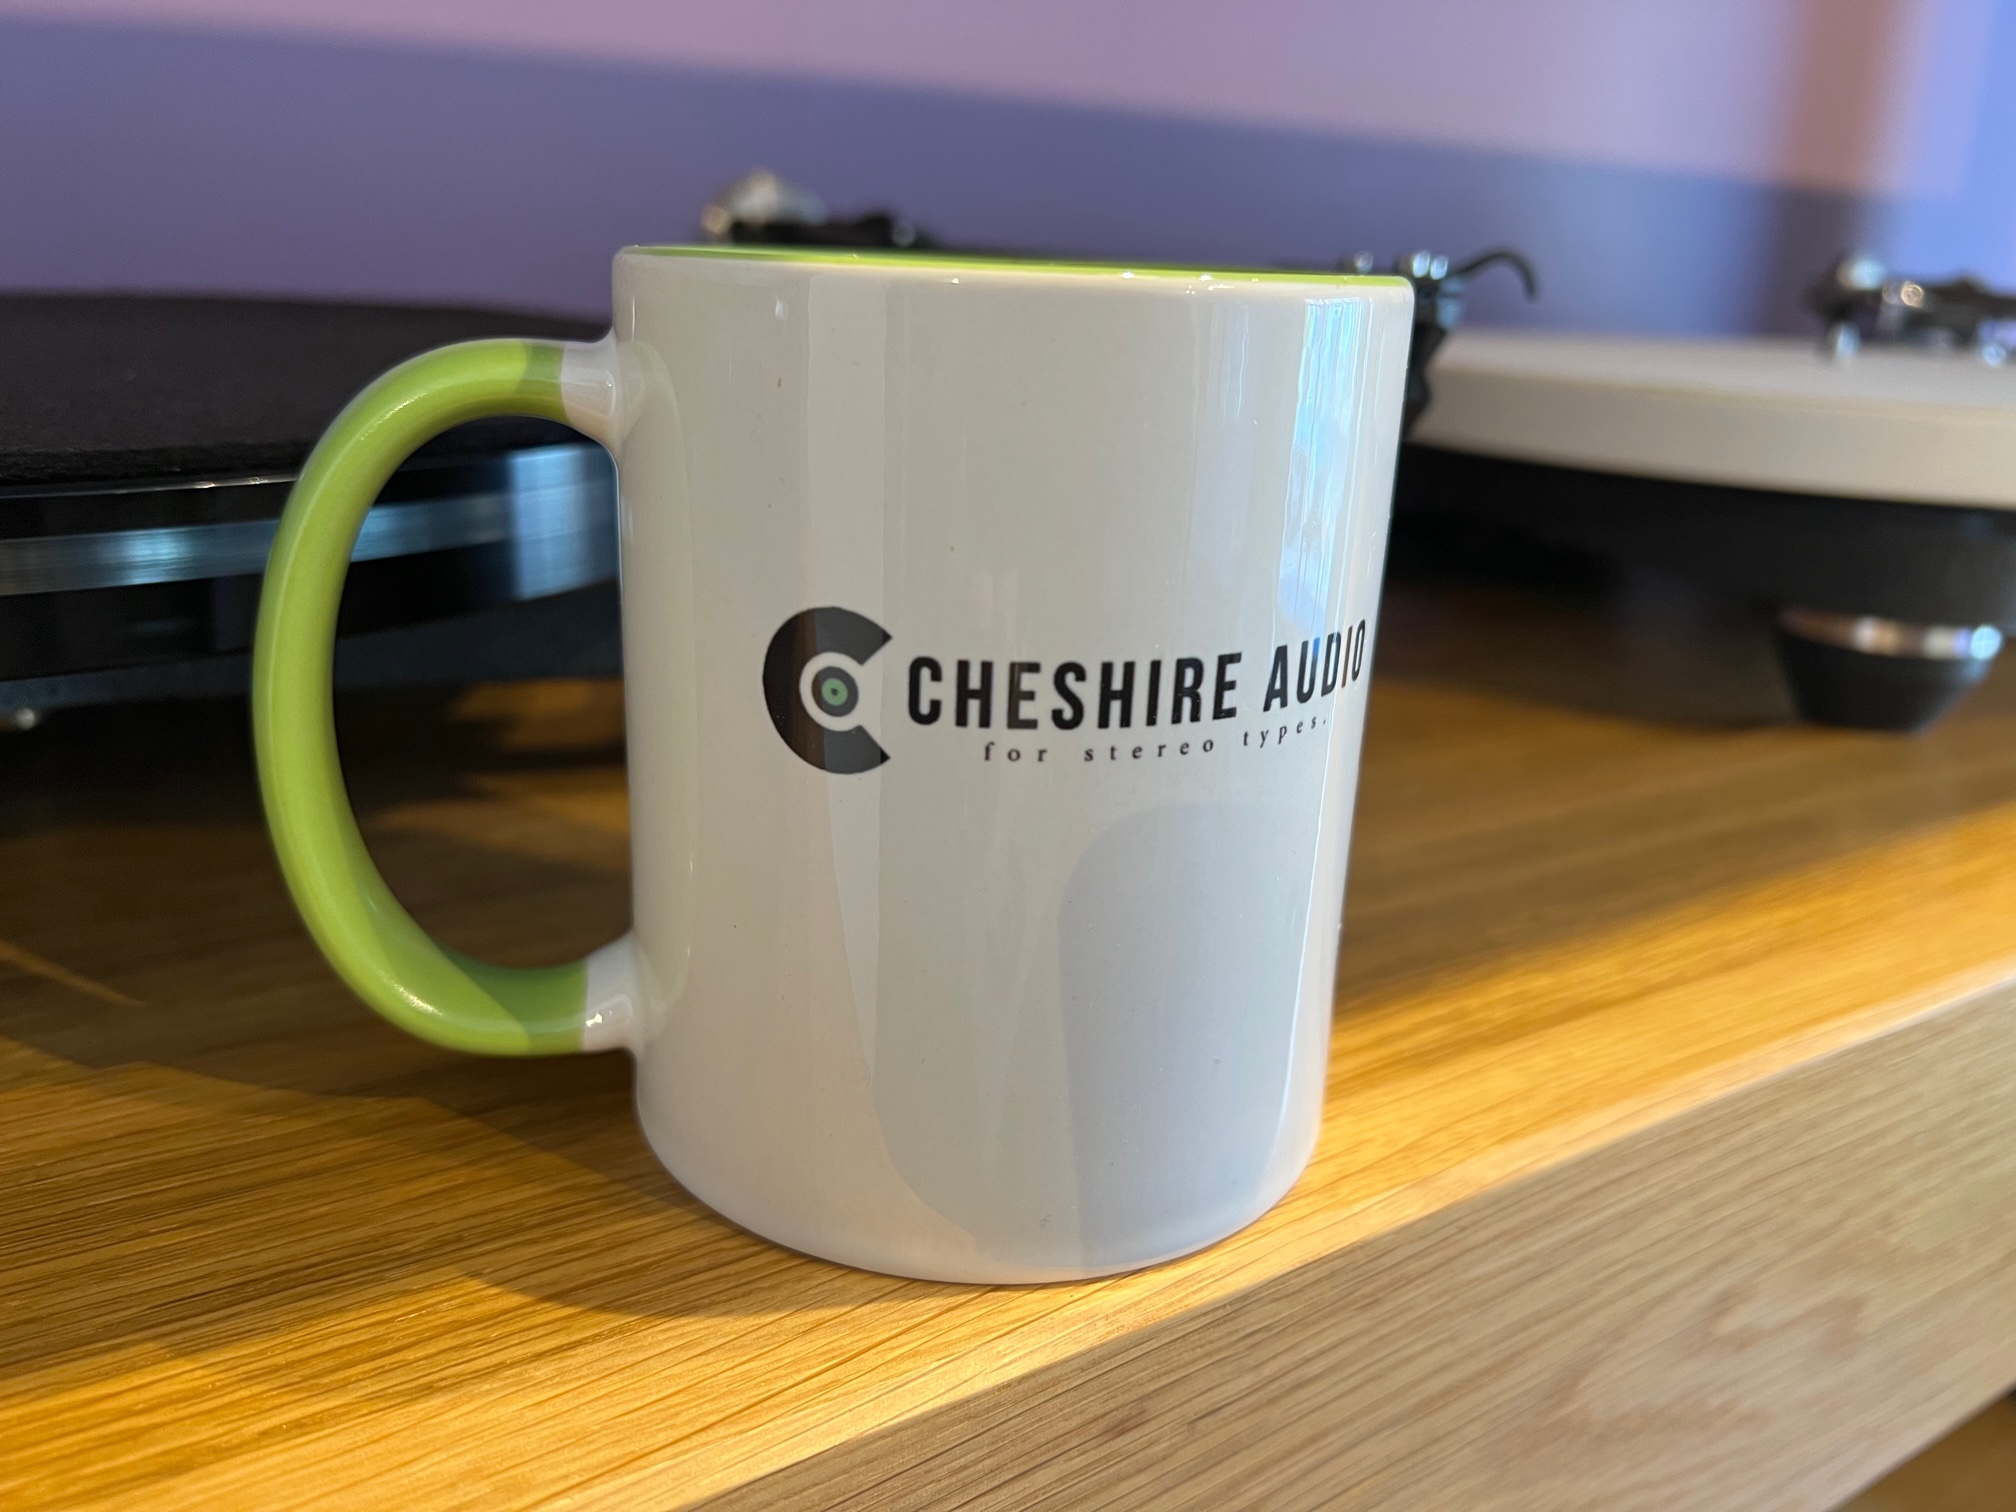 Cheshire Audio Mug